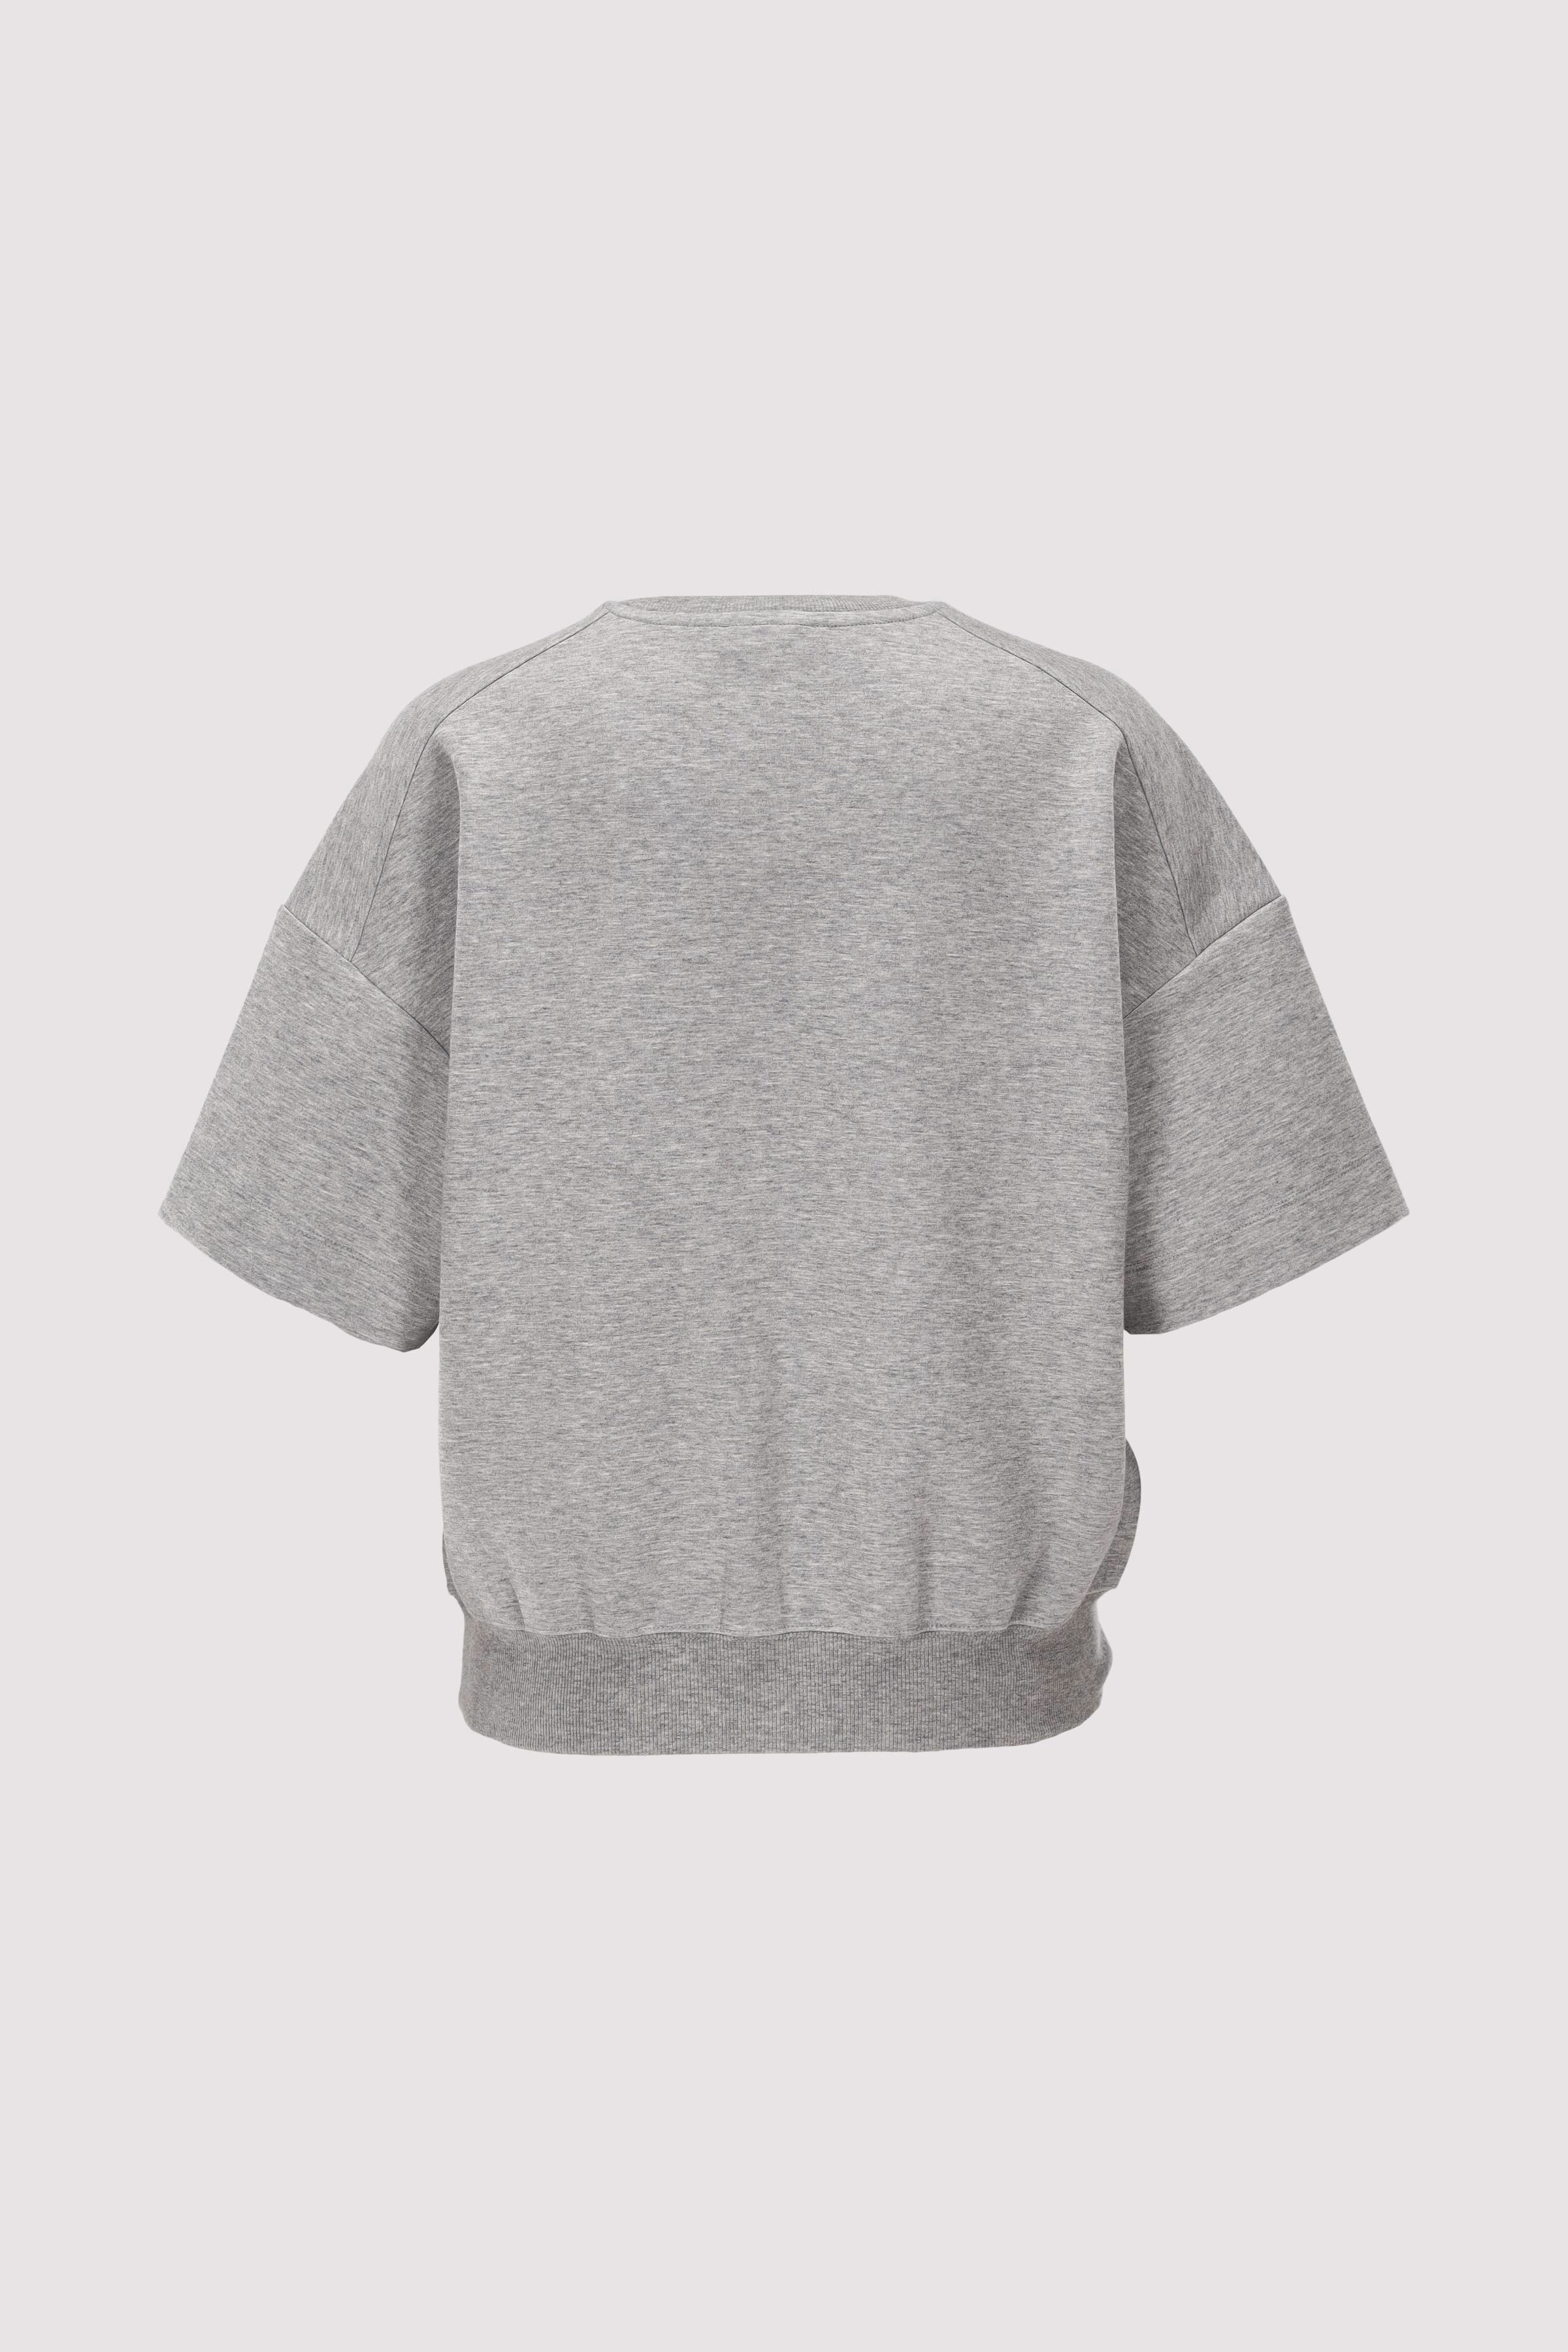 Sweatshirt, short sleeve, logo